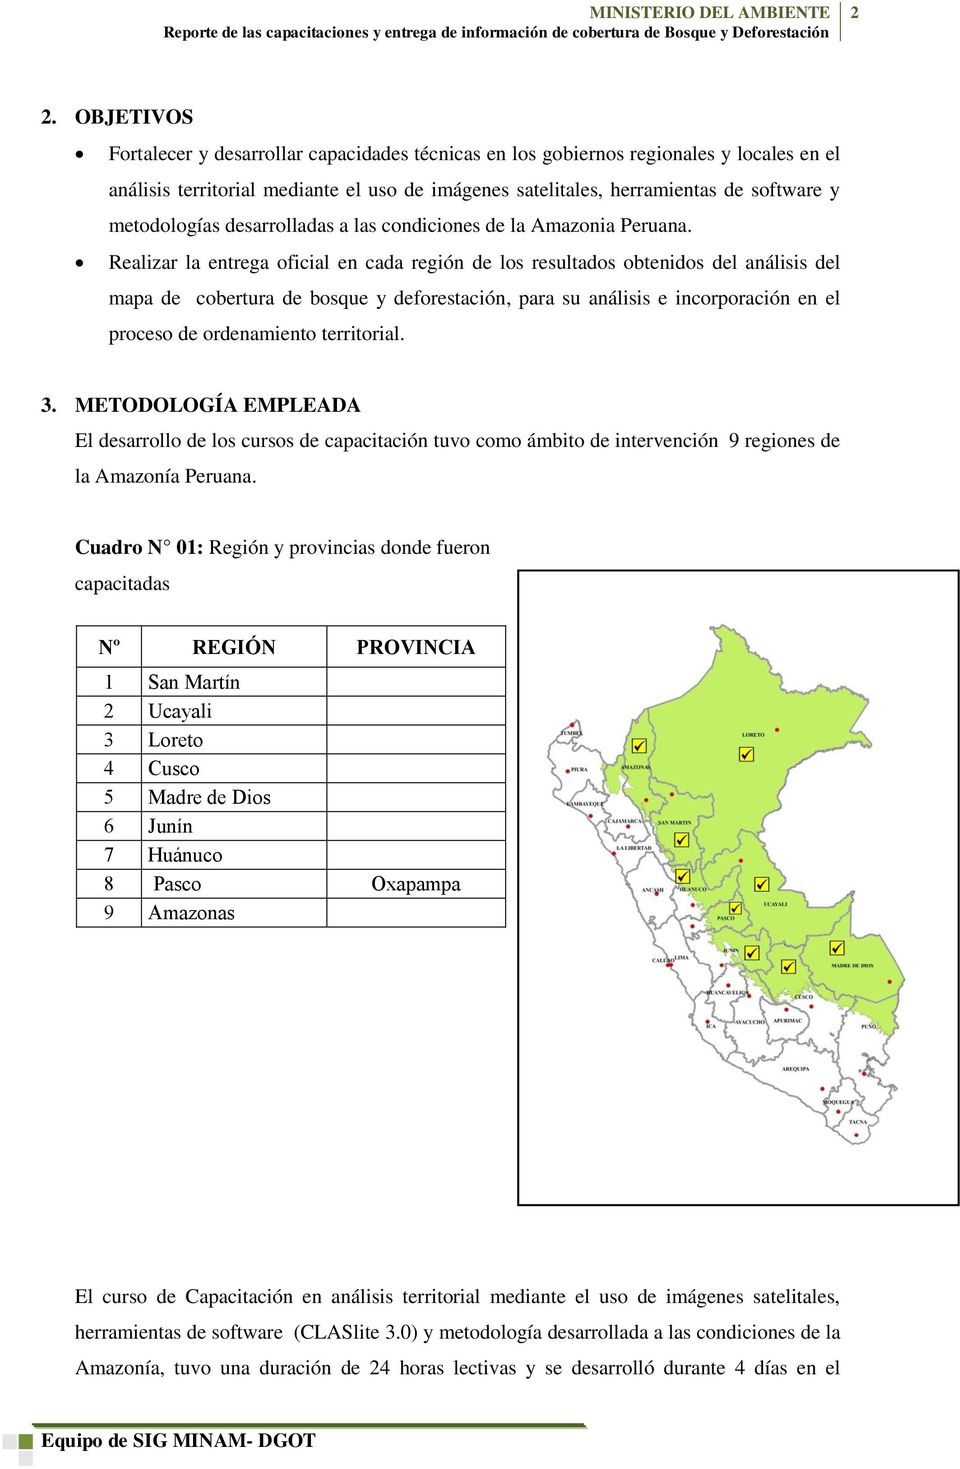 Realizar la entrega oficial en cada región de los resultados obtenidos del análisis del mapa de cobertura de bosque y deforestación, para su análisis e incorporación en el proceso de ordenamiento